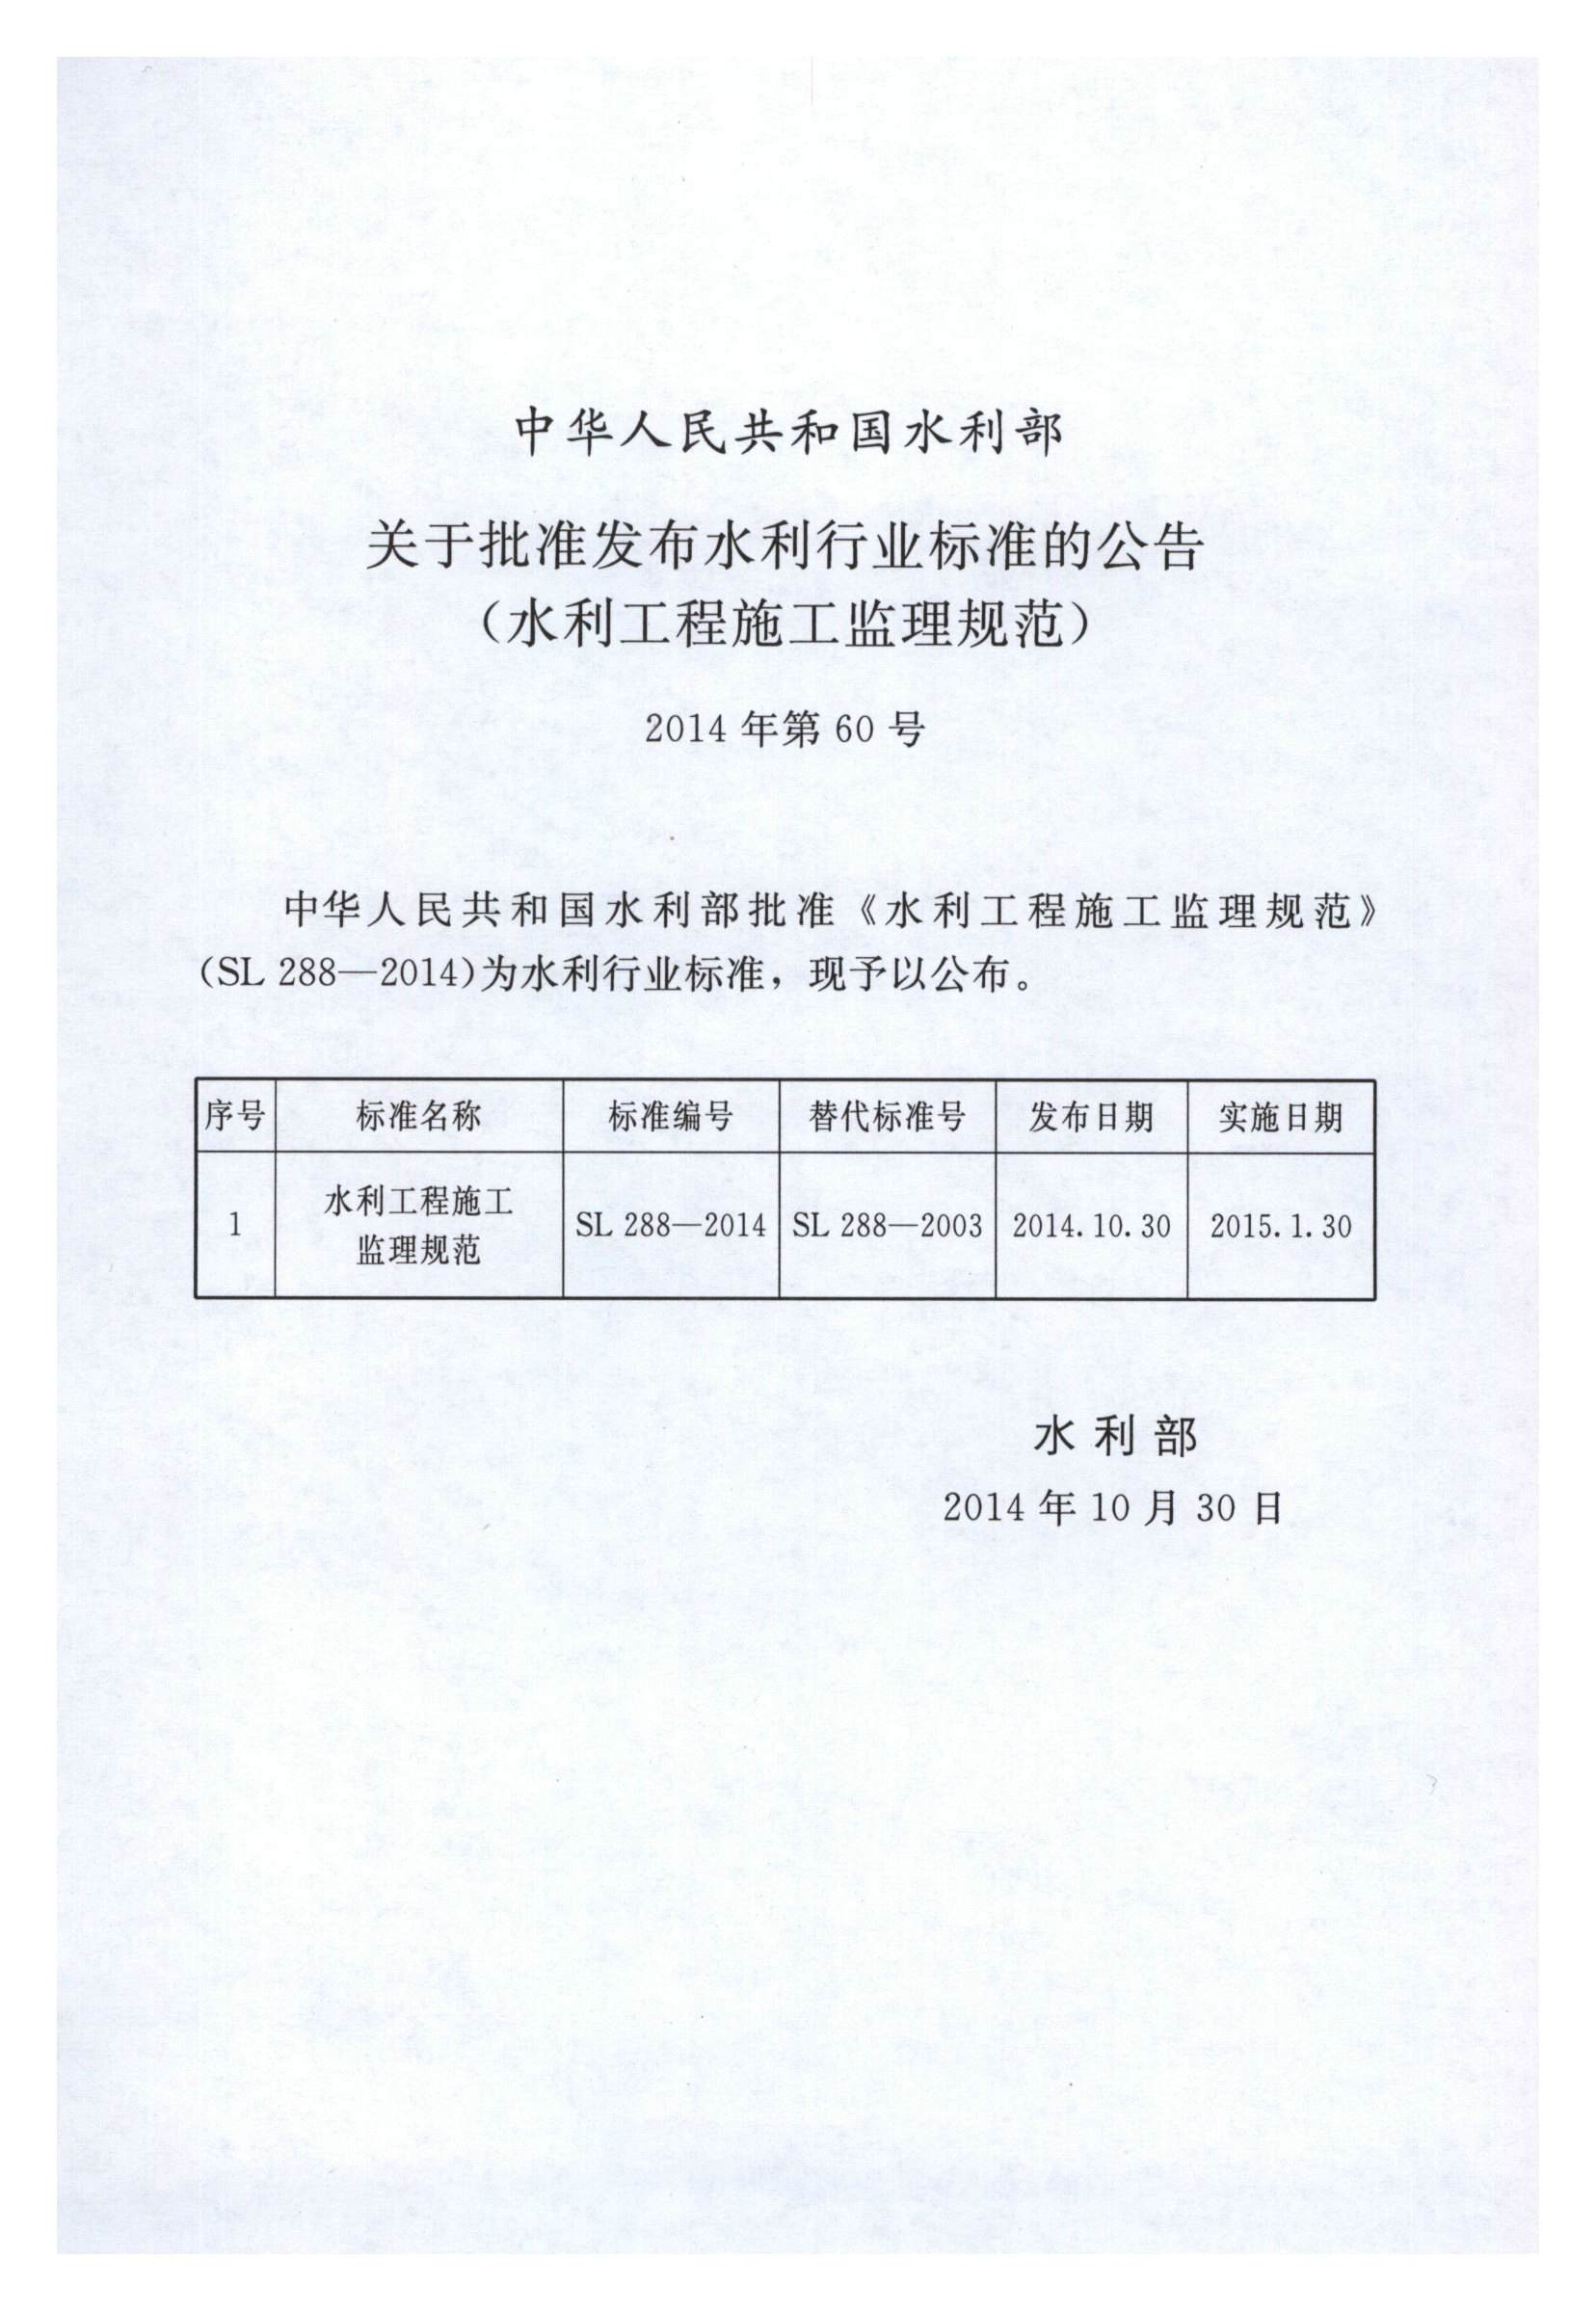 水利工程施工监理规范（SL 288-2014）_页面_002.jpg